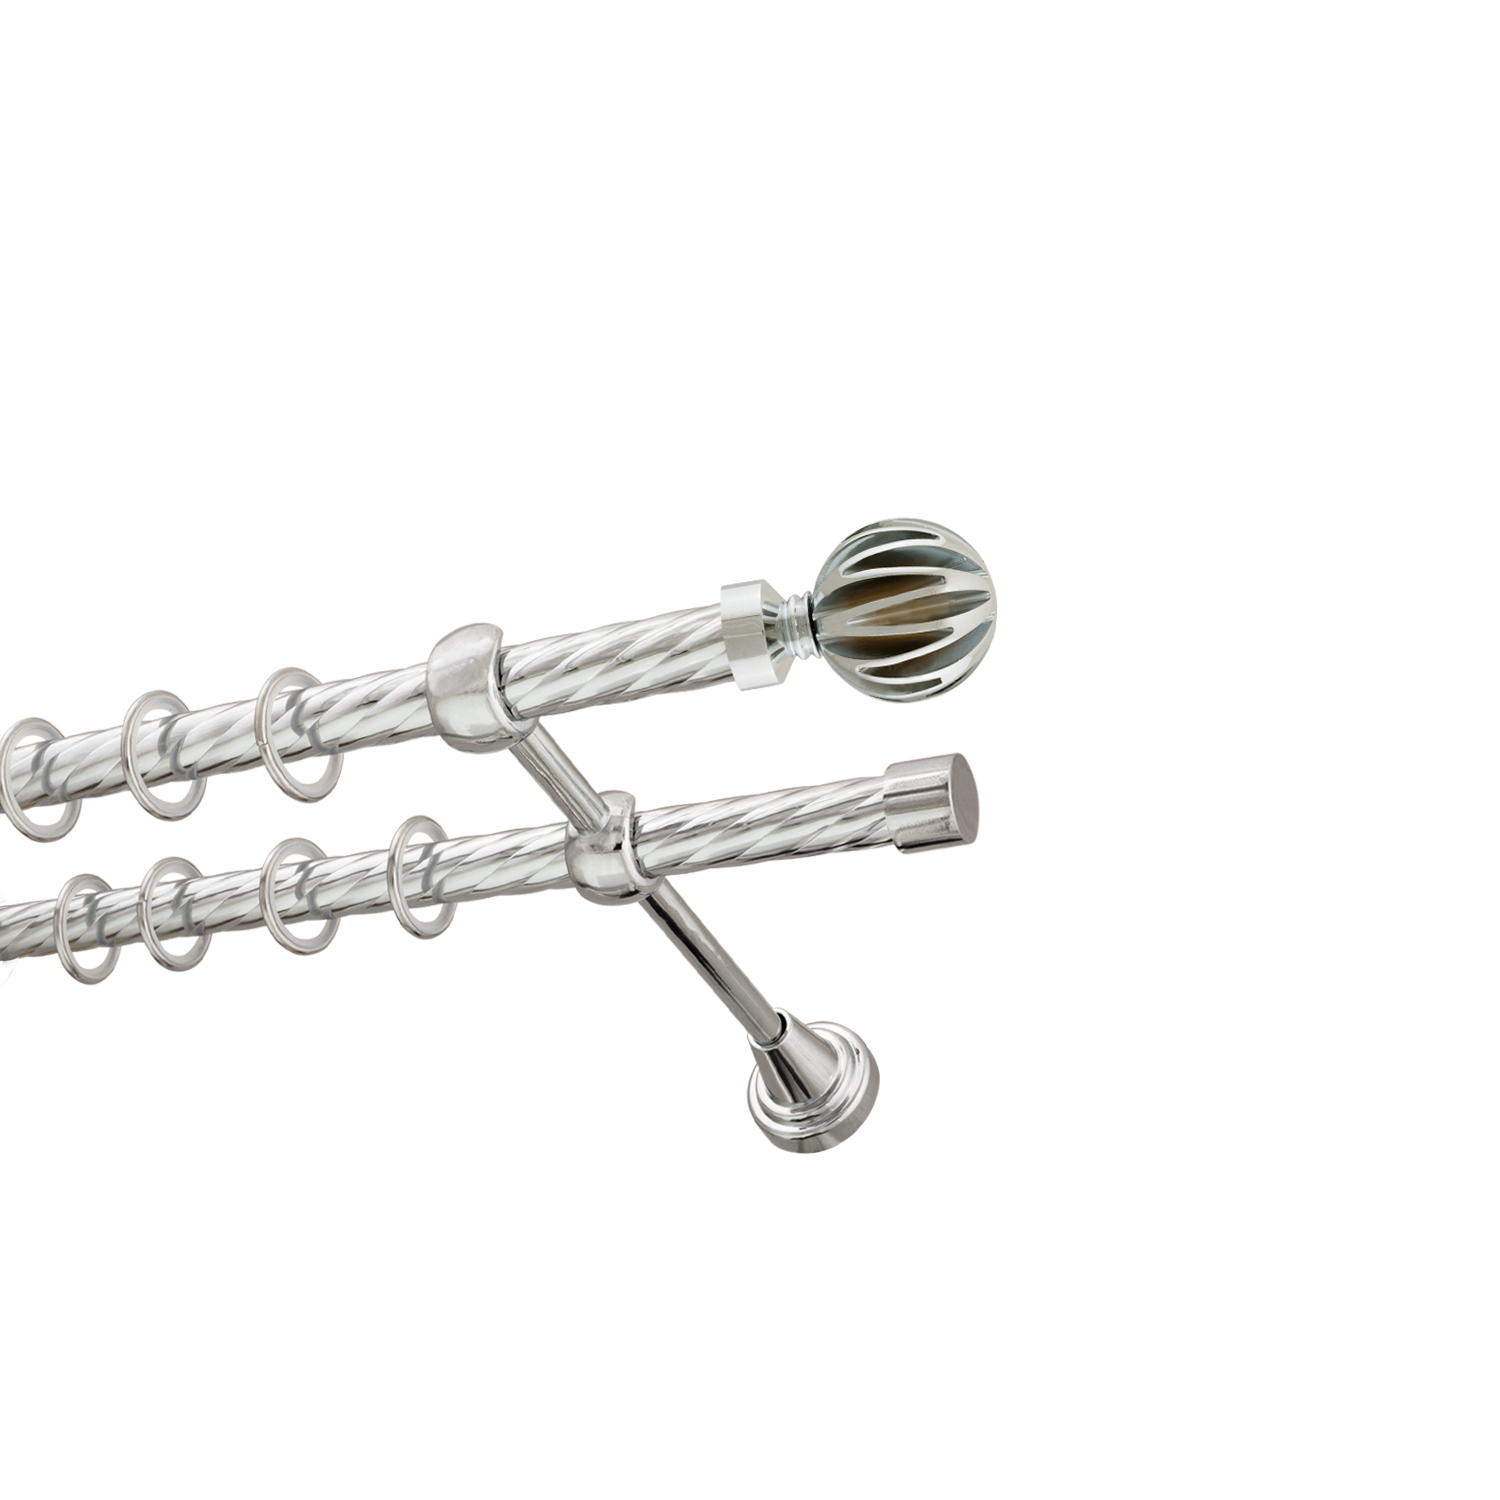 Металлический карниз для штор Шафран, двухрядный 16/16 мм, серебро, витая штанга, длина 240 см